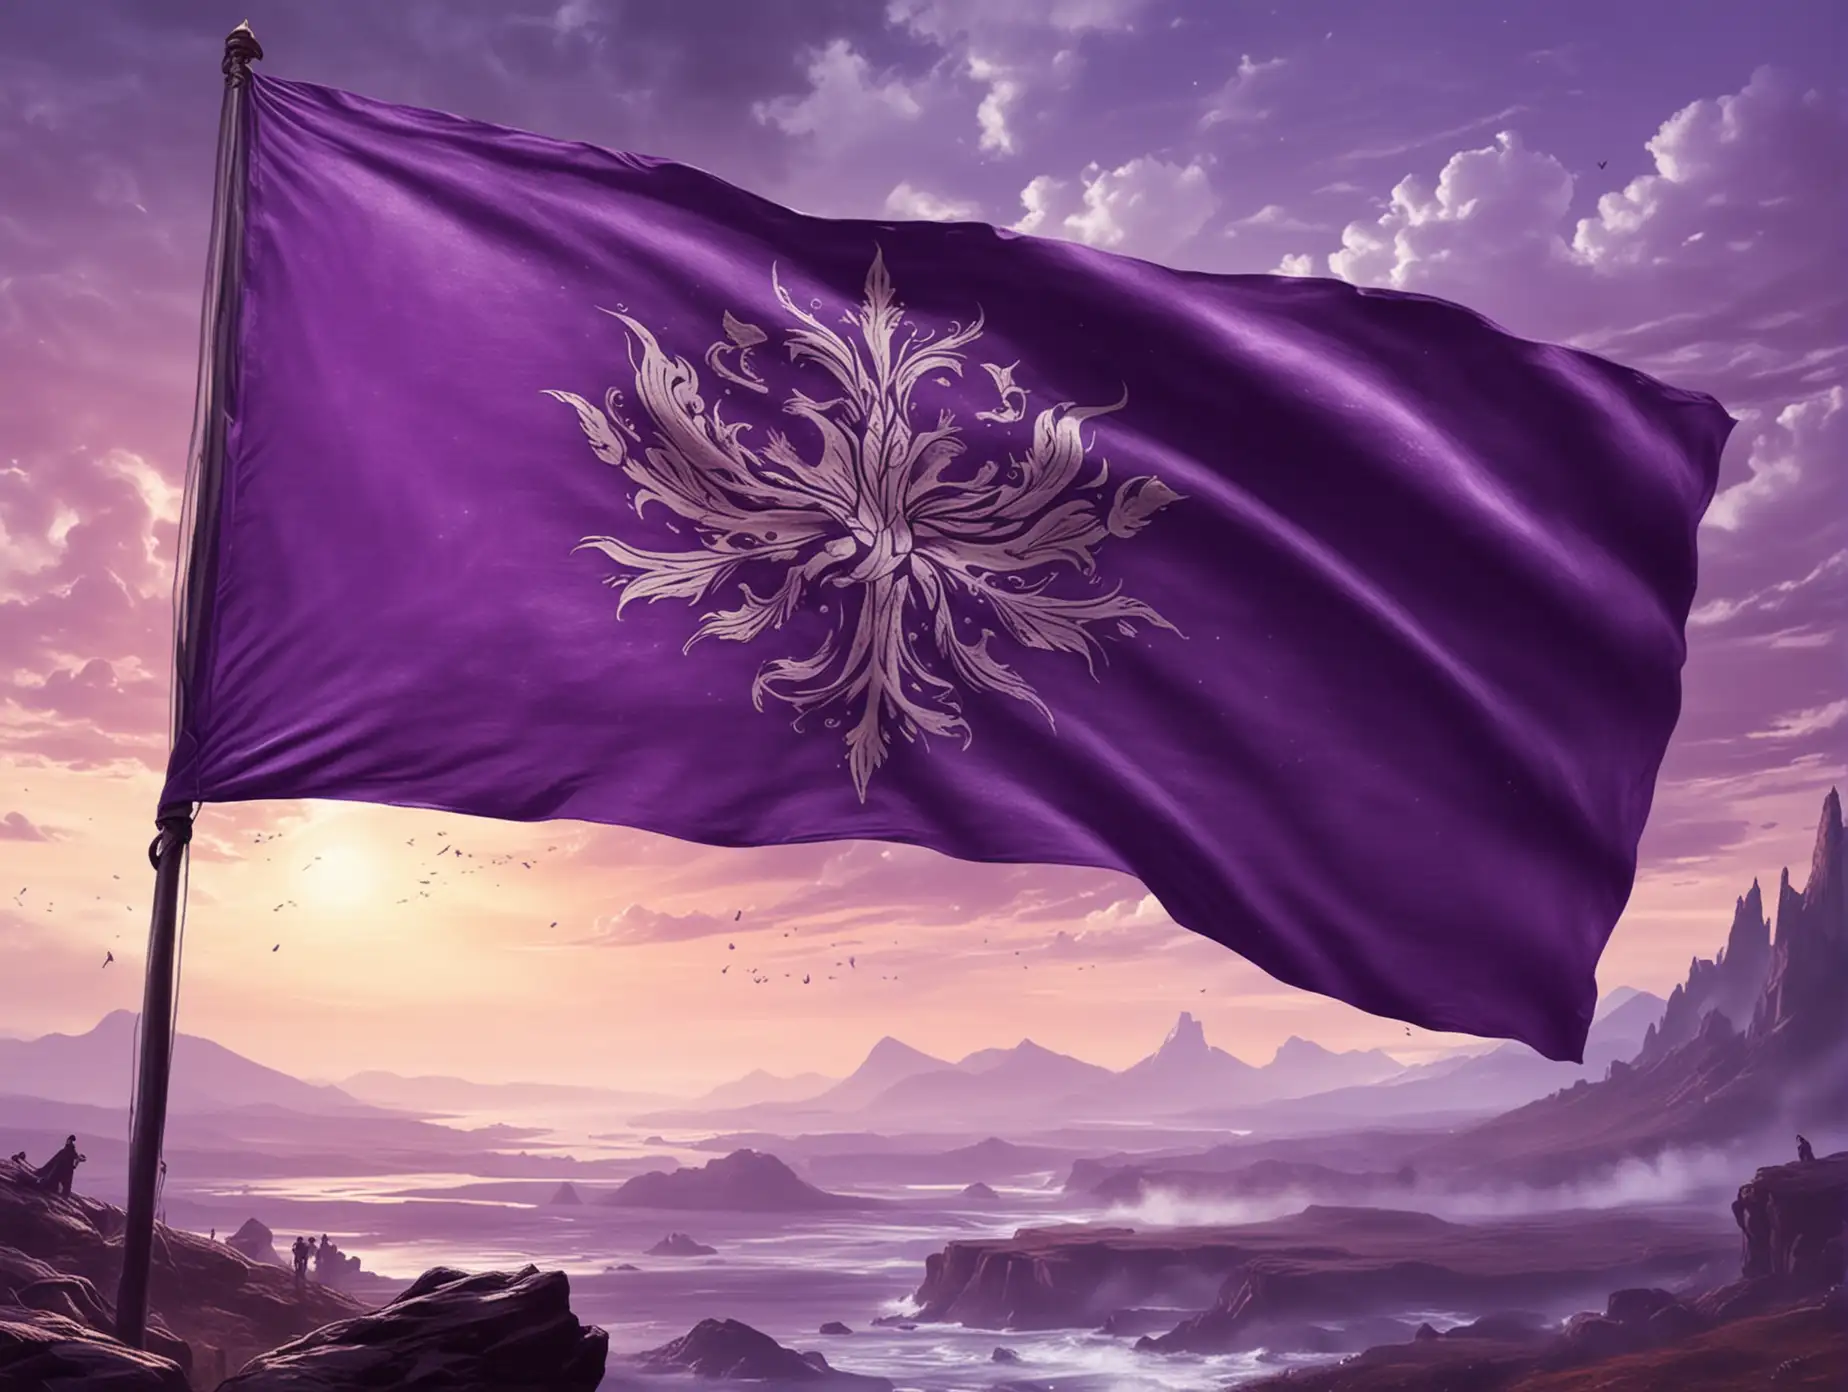 Design a violet flag of a fantasy fiction nation.